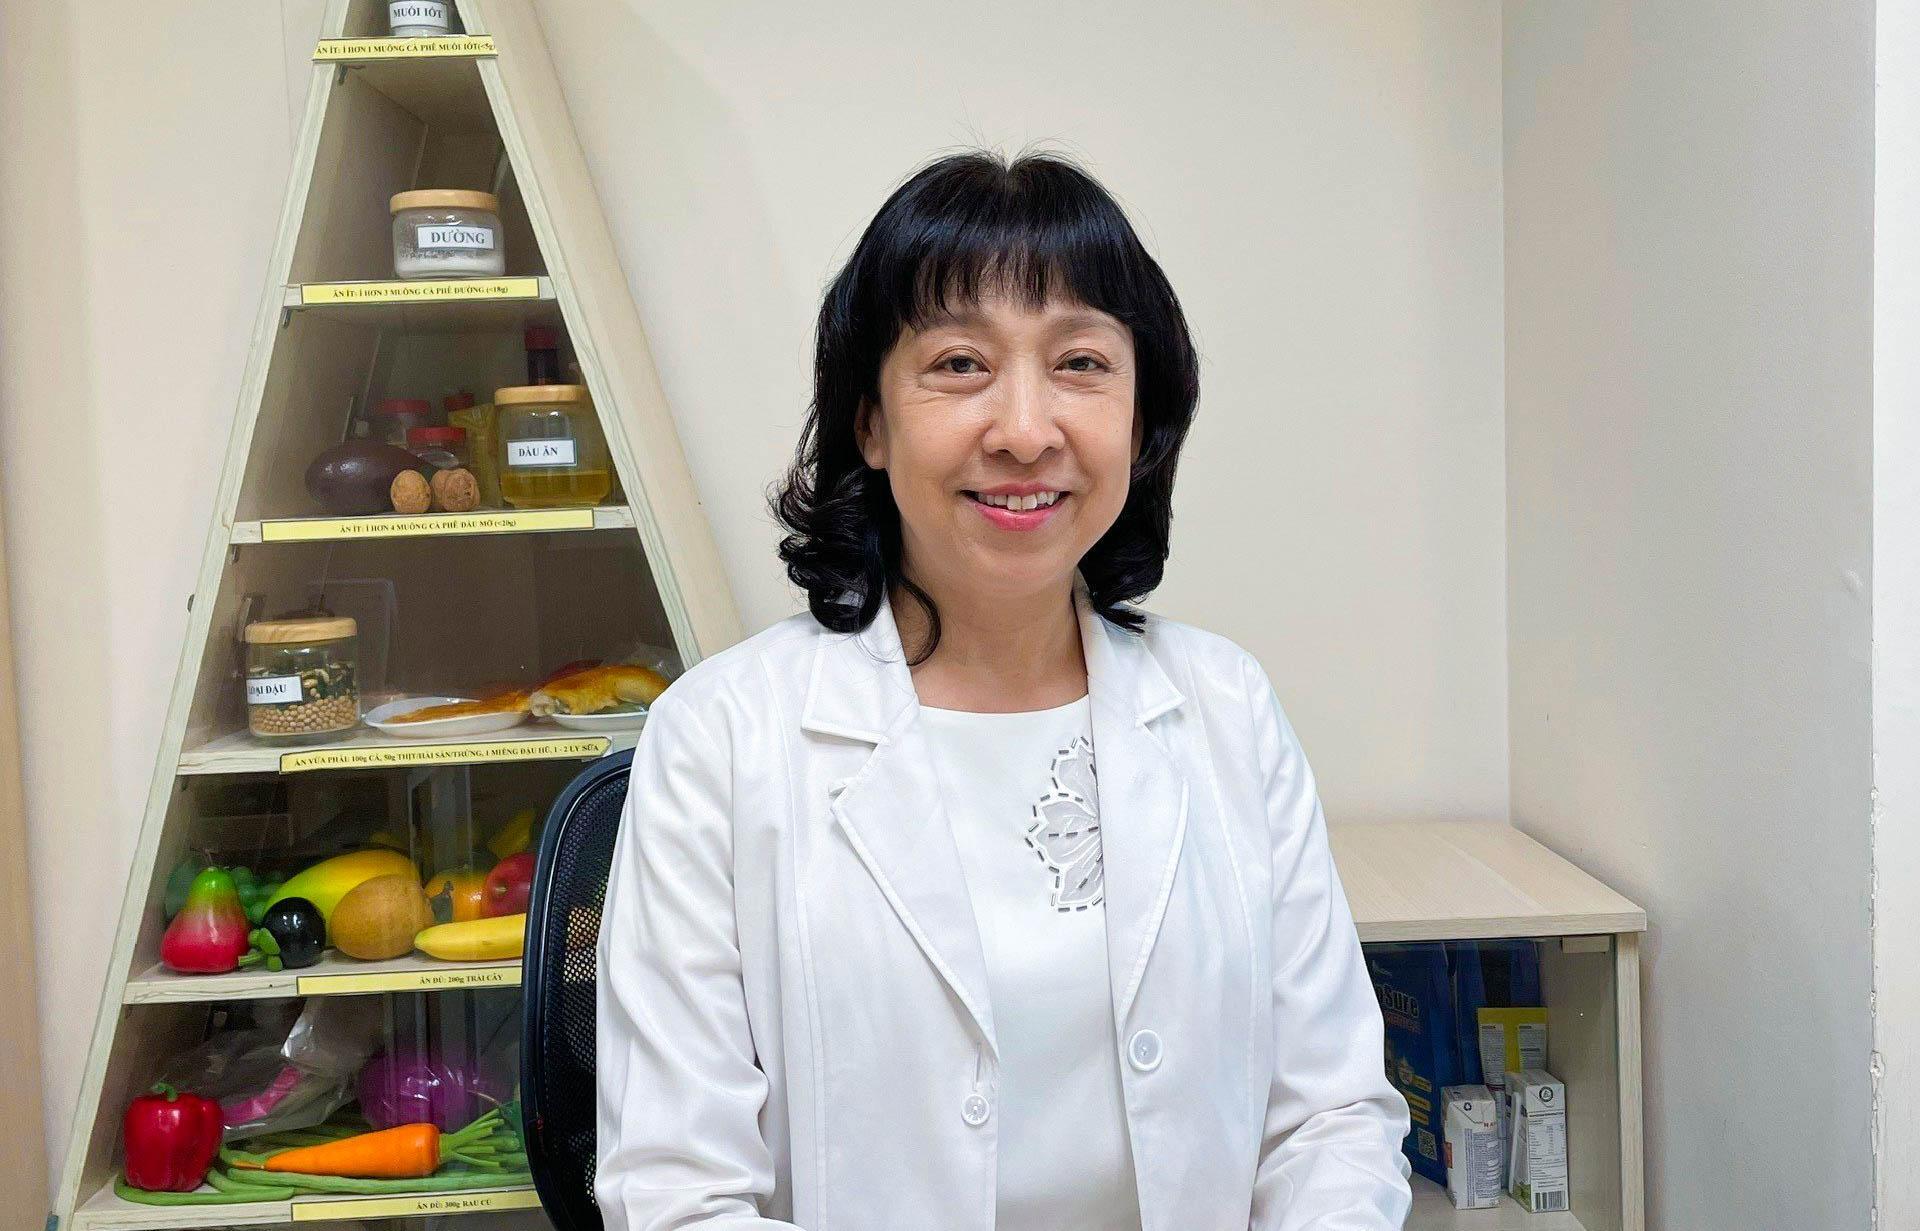 Bác sĩ Minh Hạnh: “Chế độ ăn lành mạnh có vai trò quan trọng trong việc phòng ngừa các bệnh lý mãn tính như tim mạch, đái tháo đường, ung thư…” - Ảnh: TL